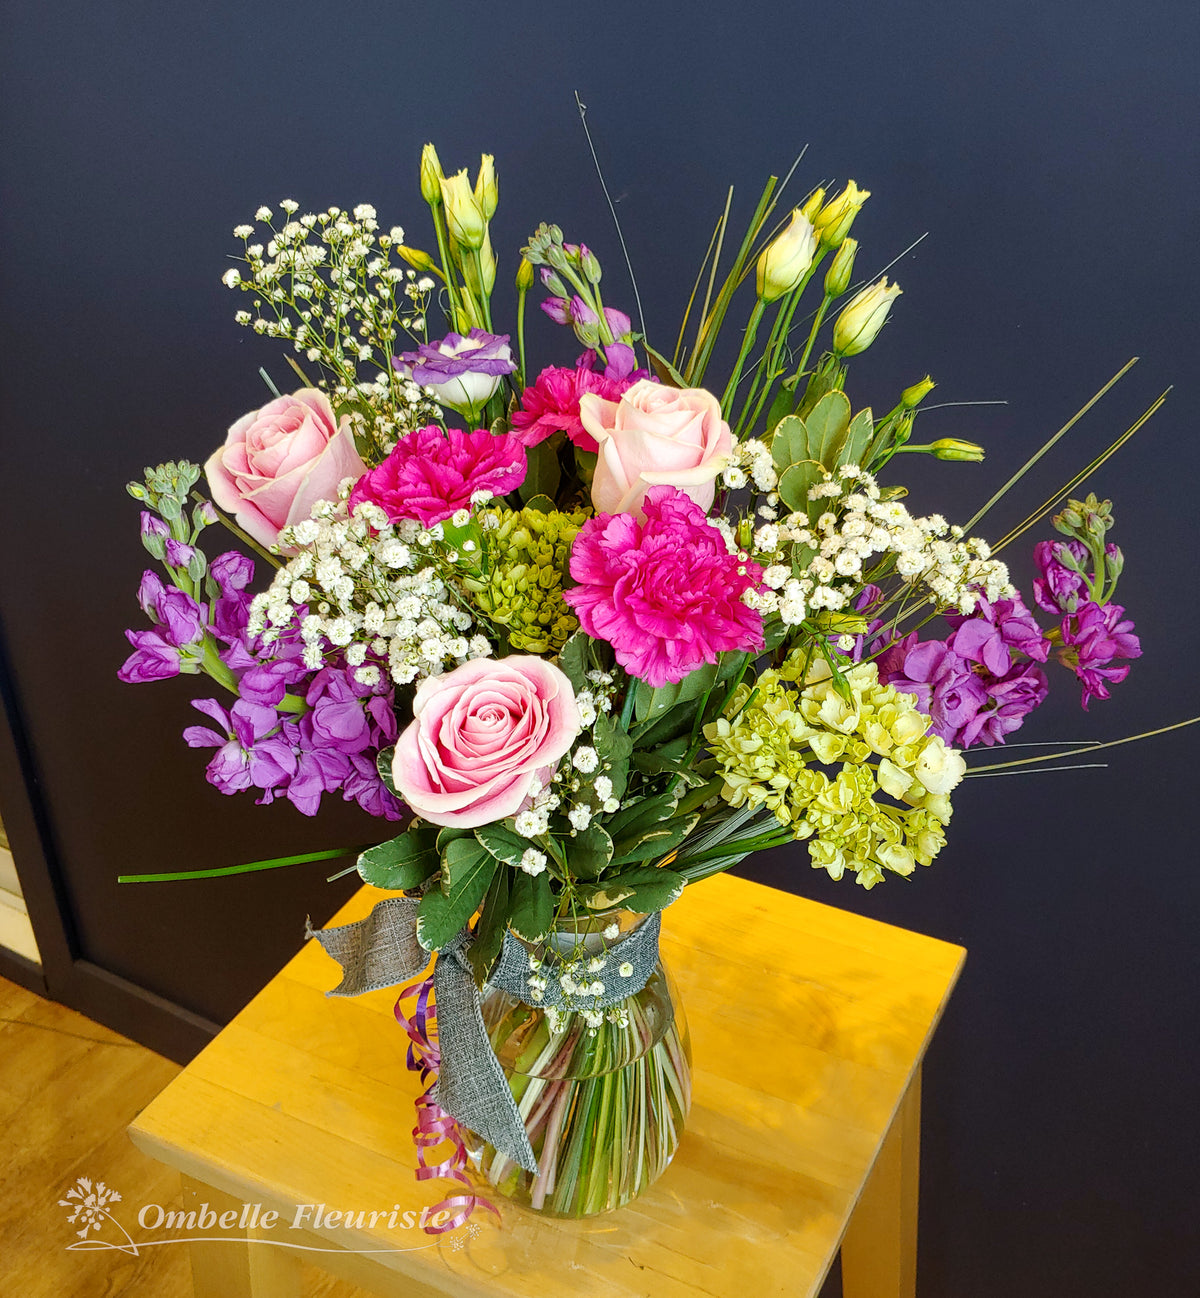 Ombelle Fleuriste - Bouquet de fleurs Dorothée